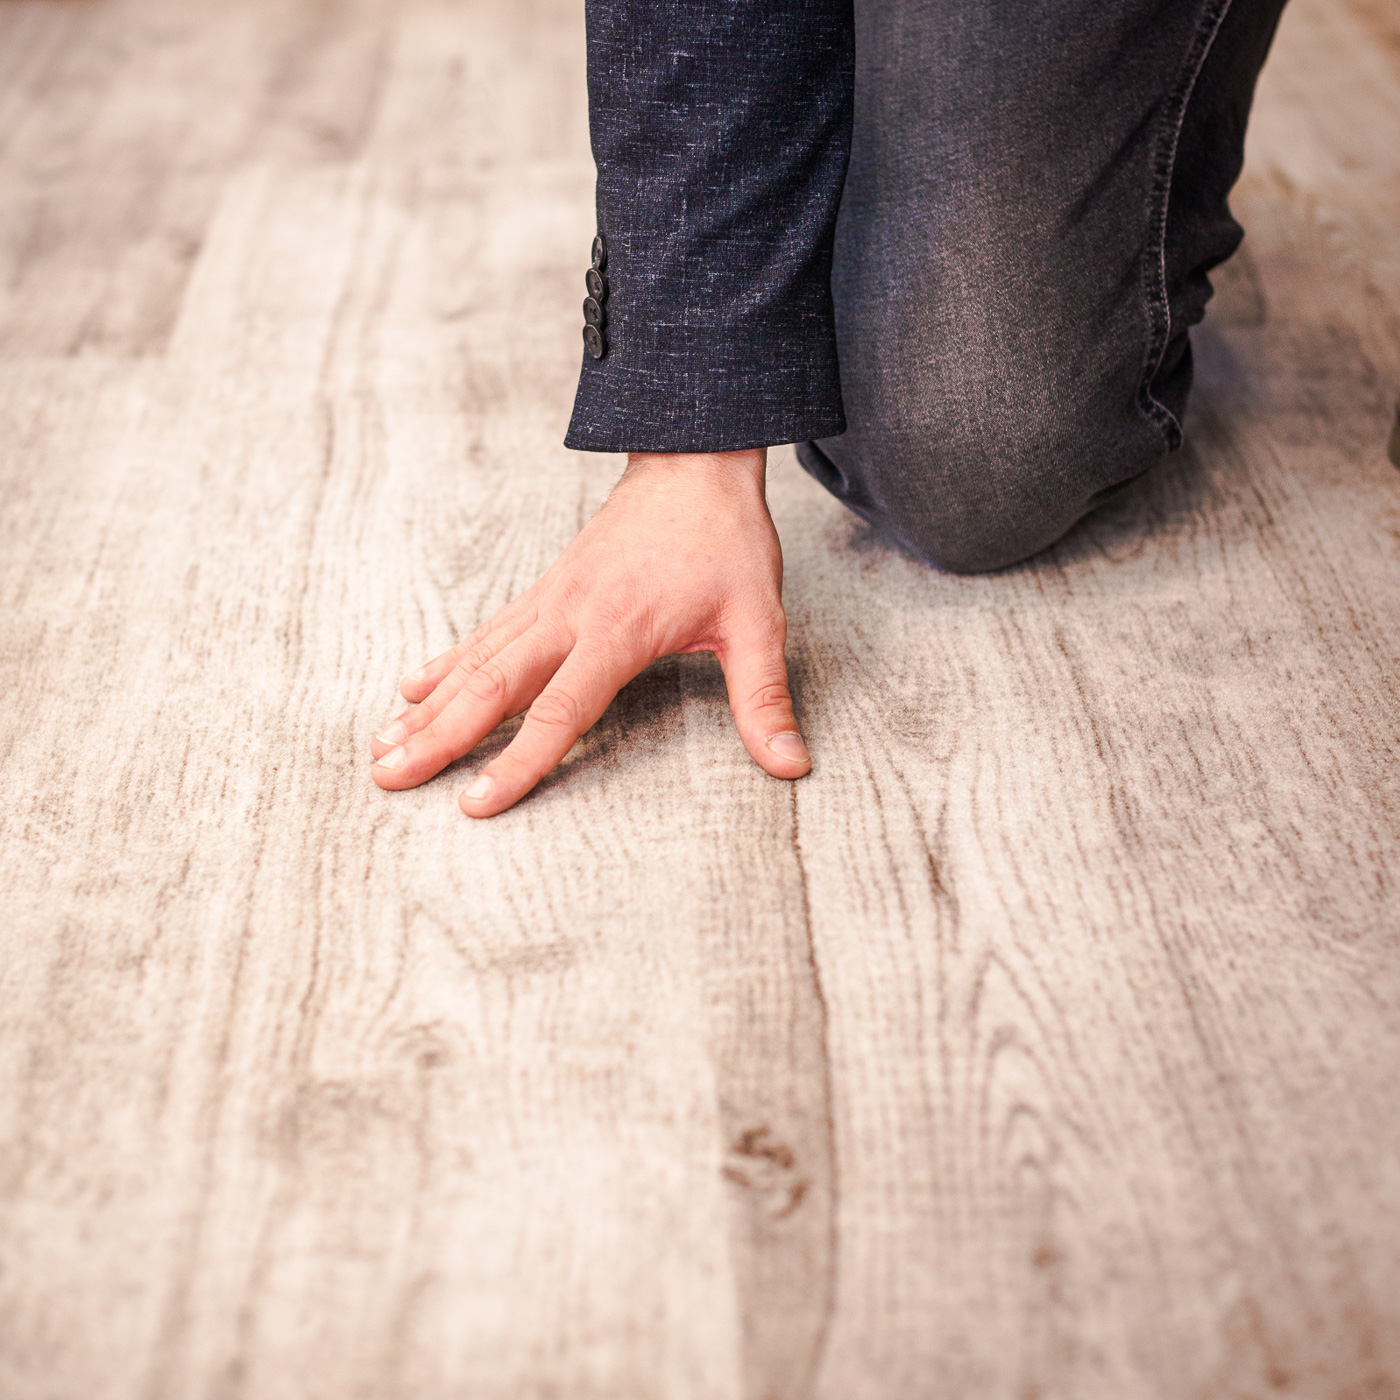 Bild zeigt Detail von Hand über einen neu verlegten Holzboden streichend.